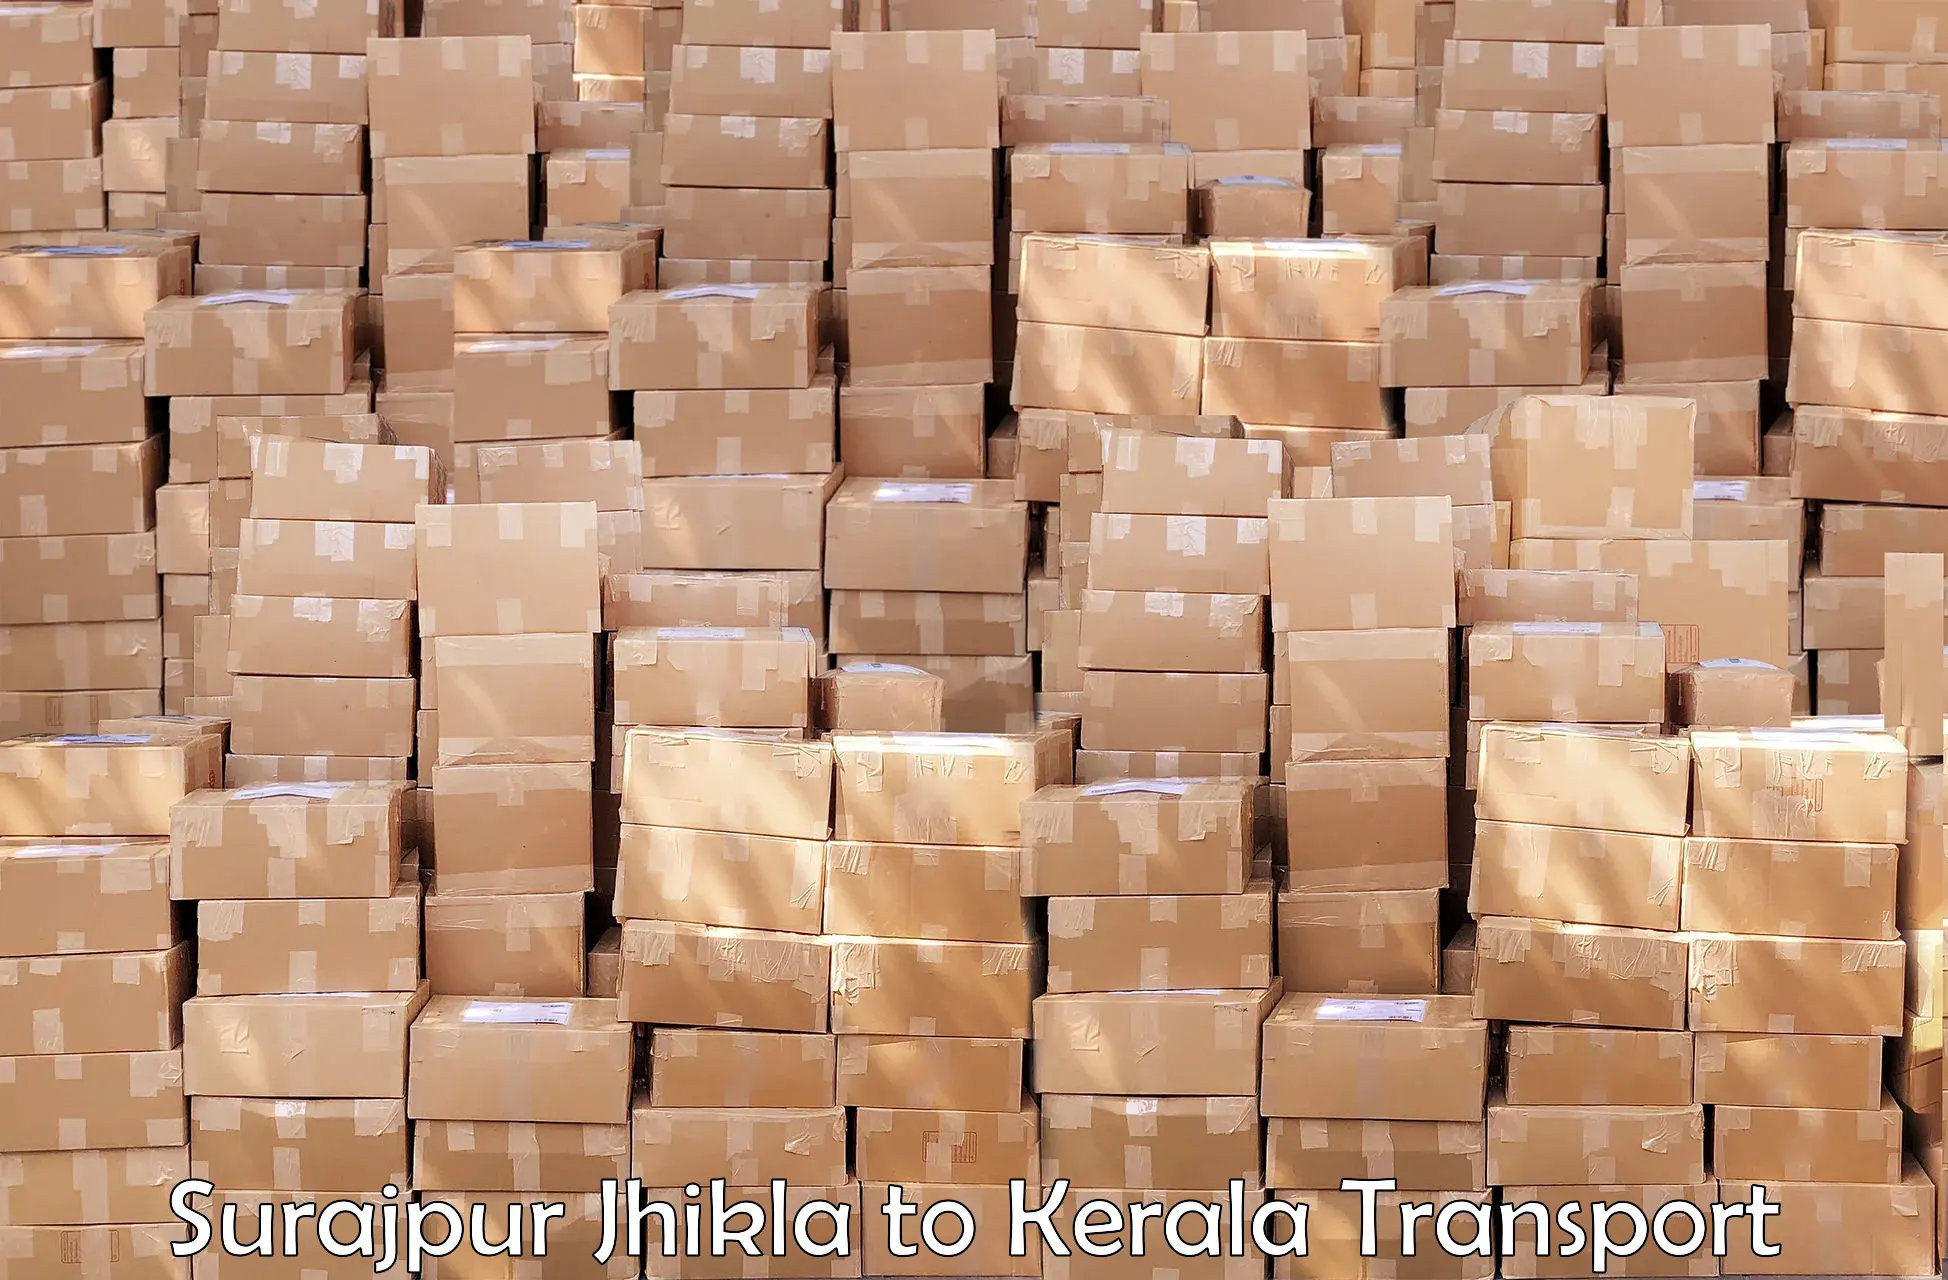 Transport in sharing Surajpur Jhikla to Vaikom